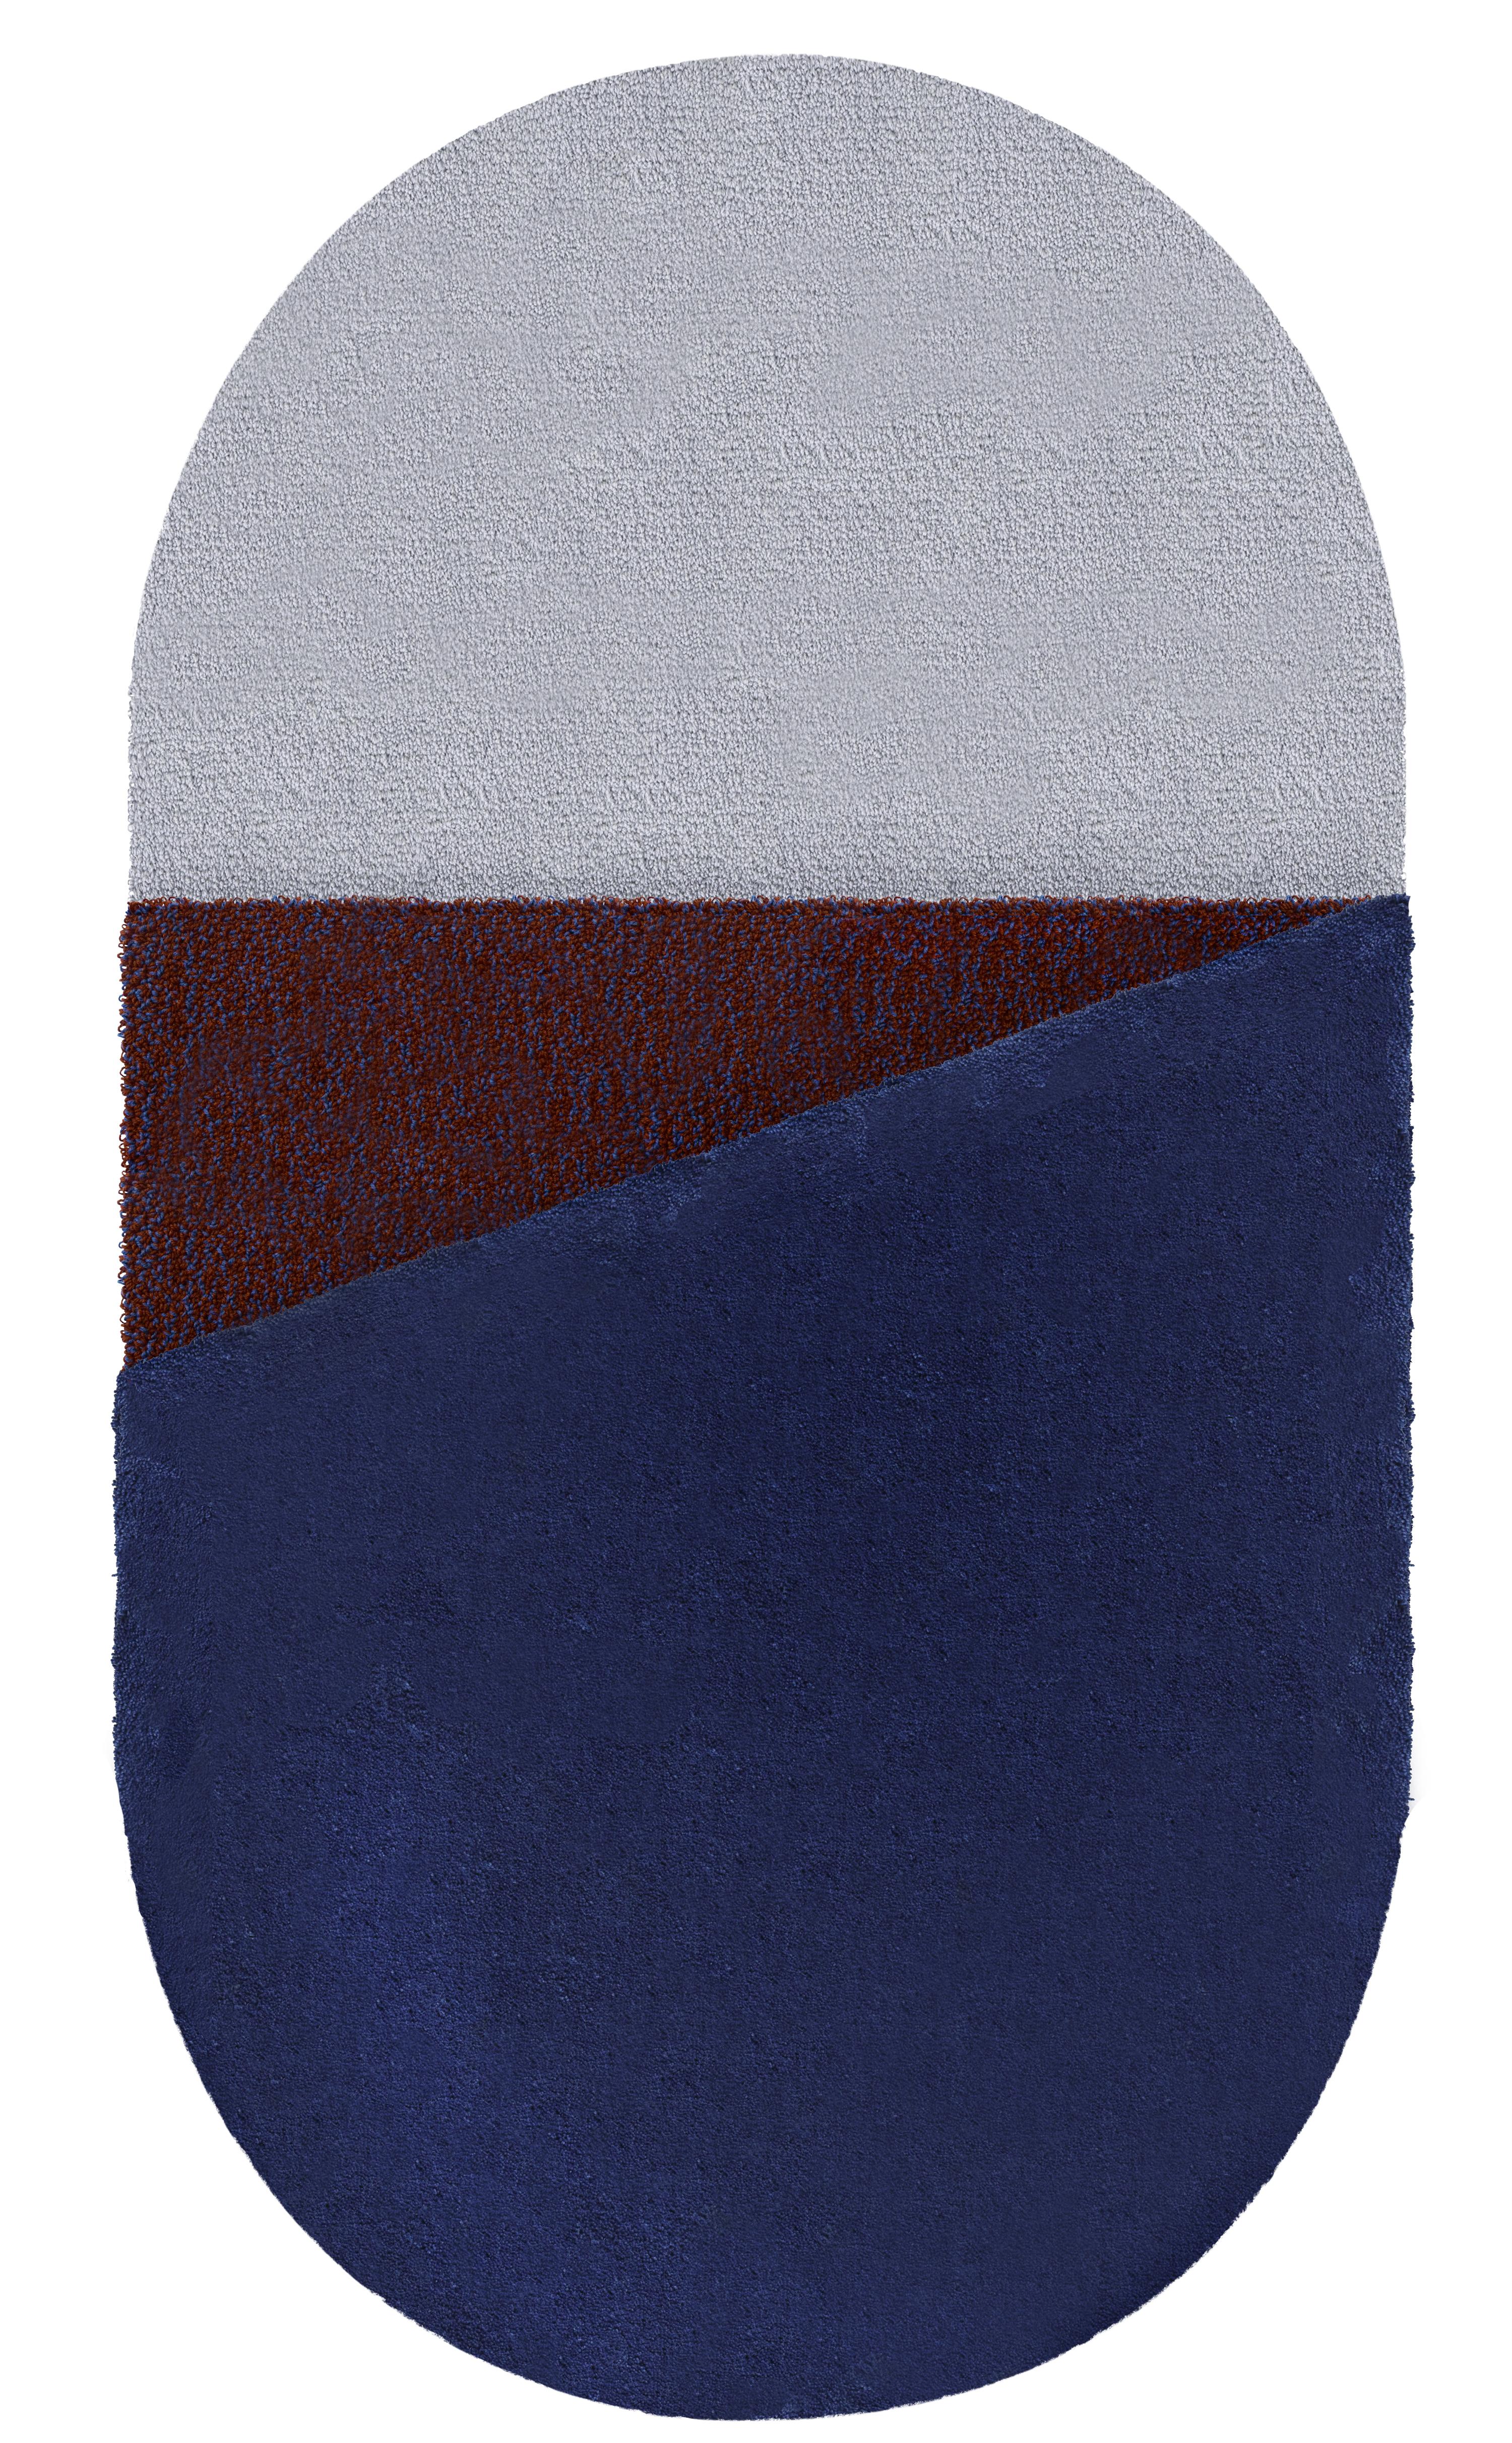 Wool Small Blue Oci Triptych Rug by Seraina Lareida For Sale